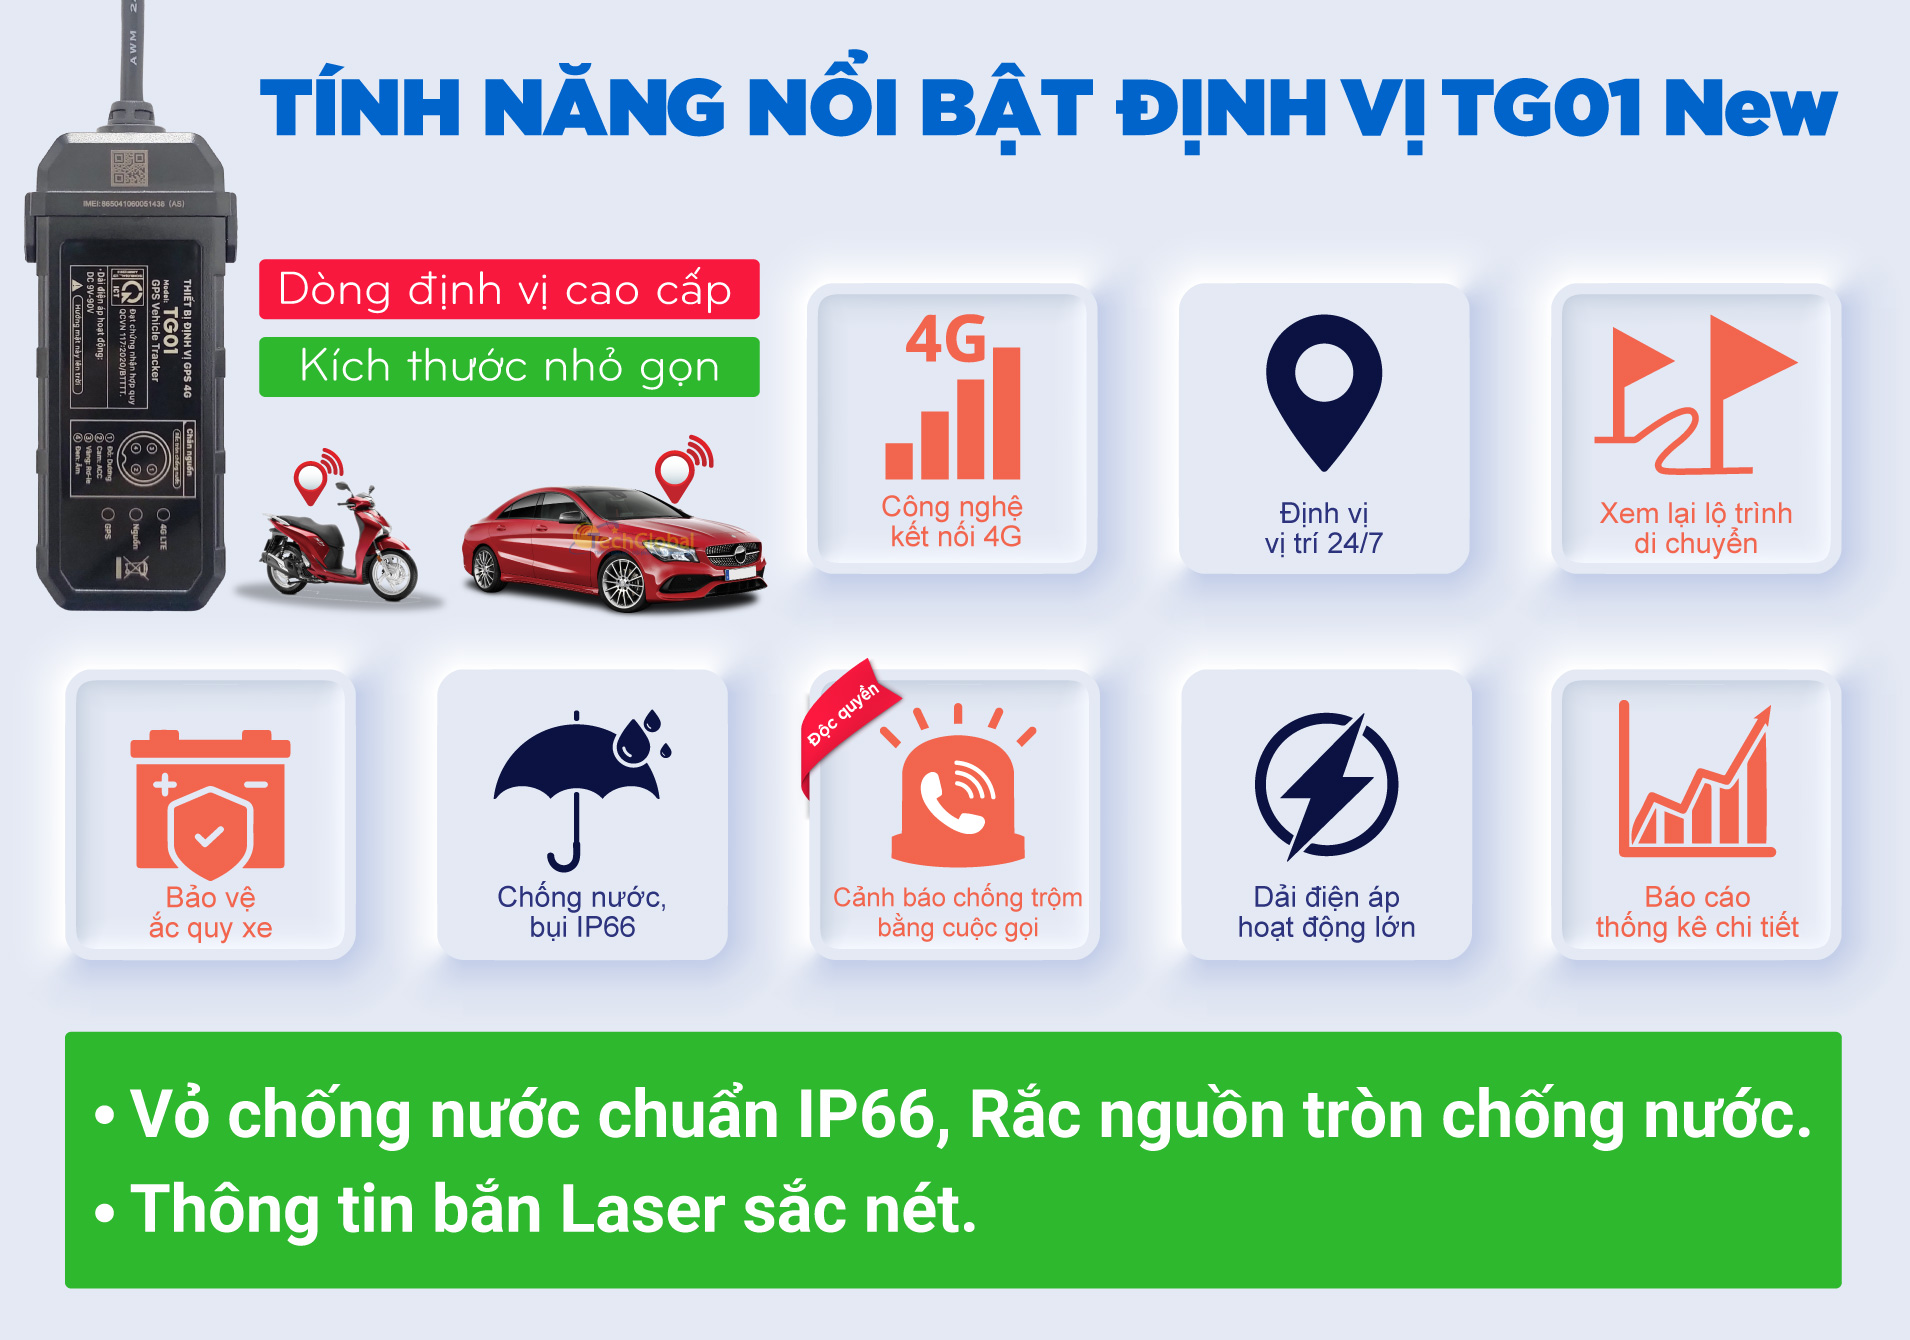 2019/Tg01-tinh-nang-noi-bat-features.jpg